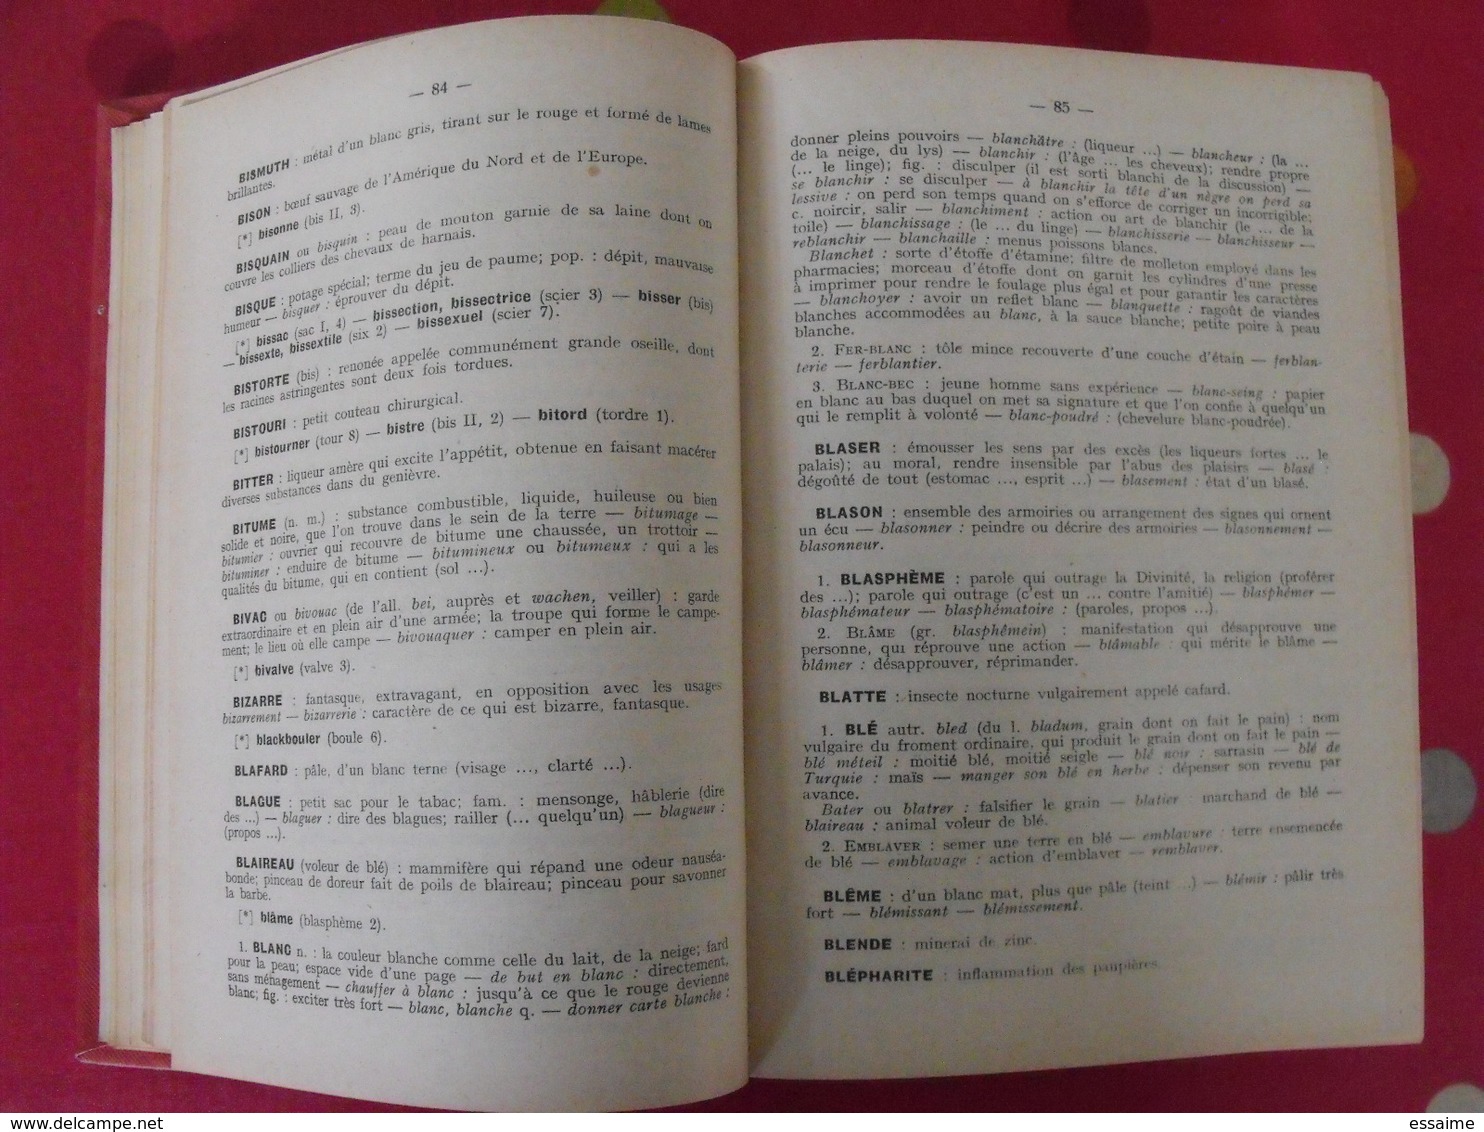 Dictionnaire étymologique De La Langue Française. Lebrun & Toisoul. Fernand Nathan 1937 - Dictionnaires